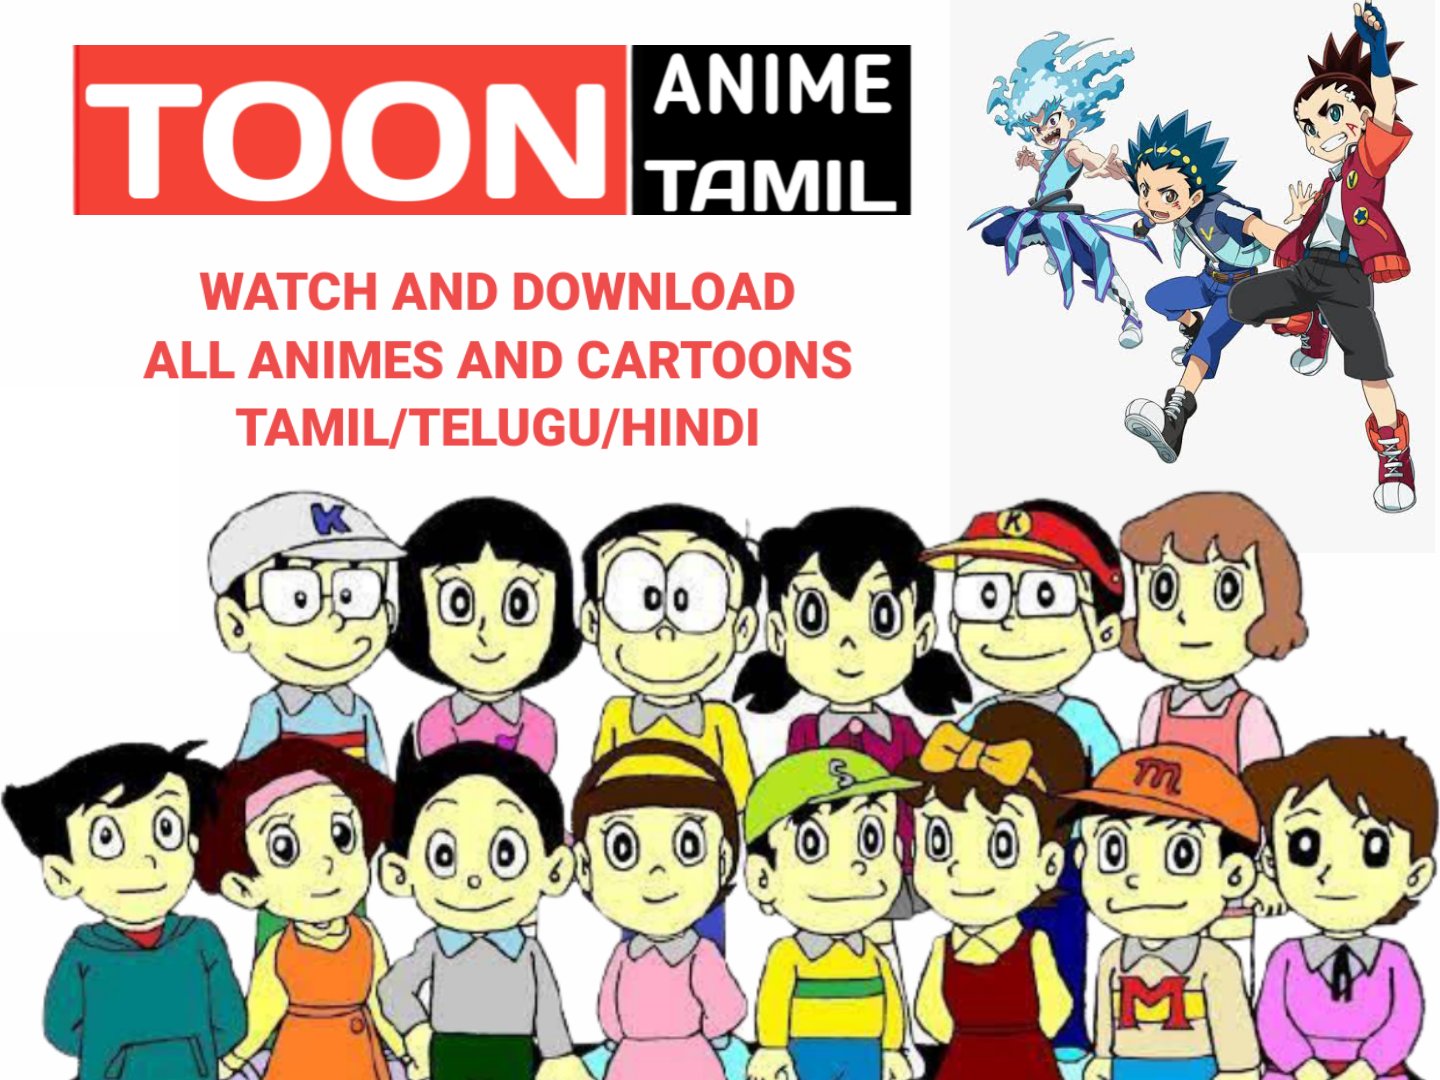 Toon Anime Tamil (@toonanimetamil) / Twitter